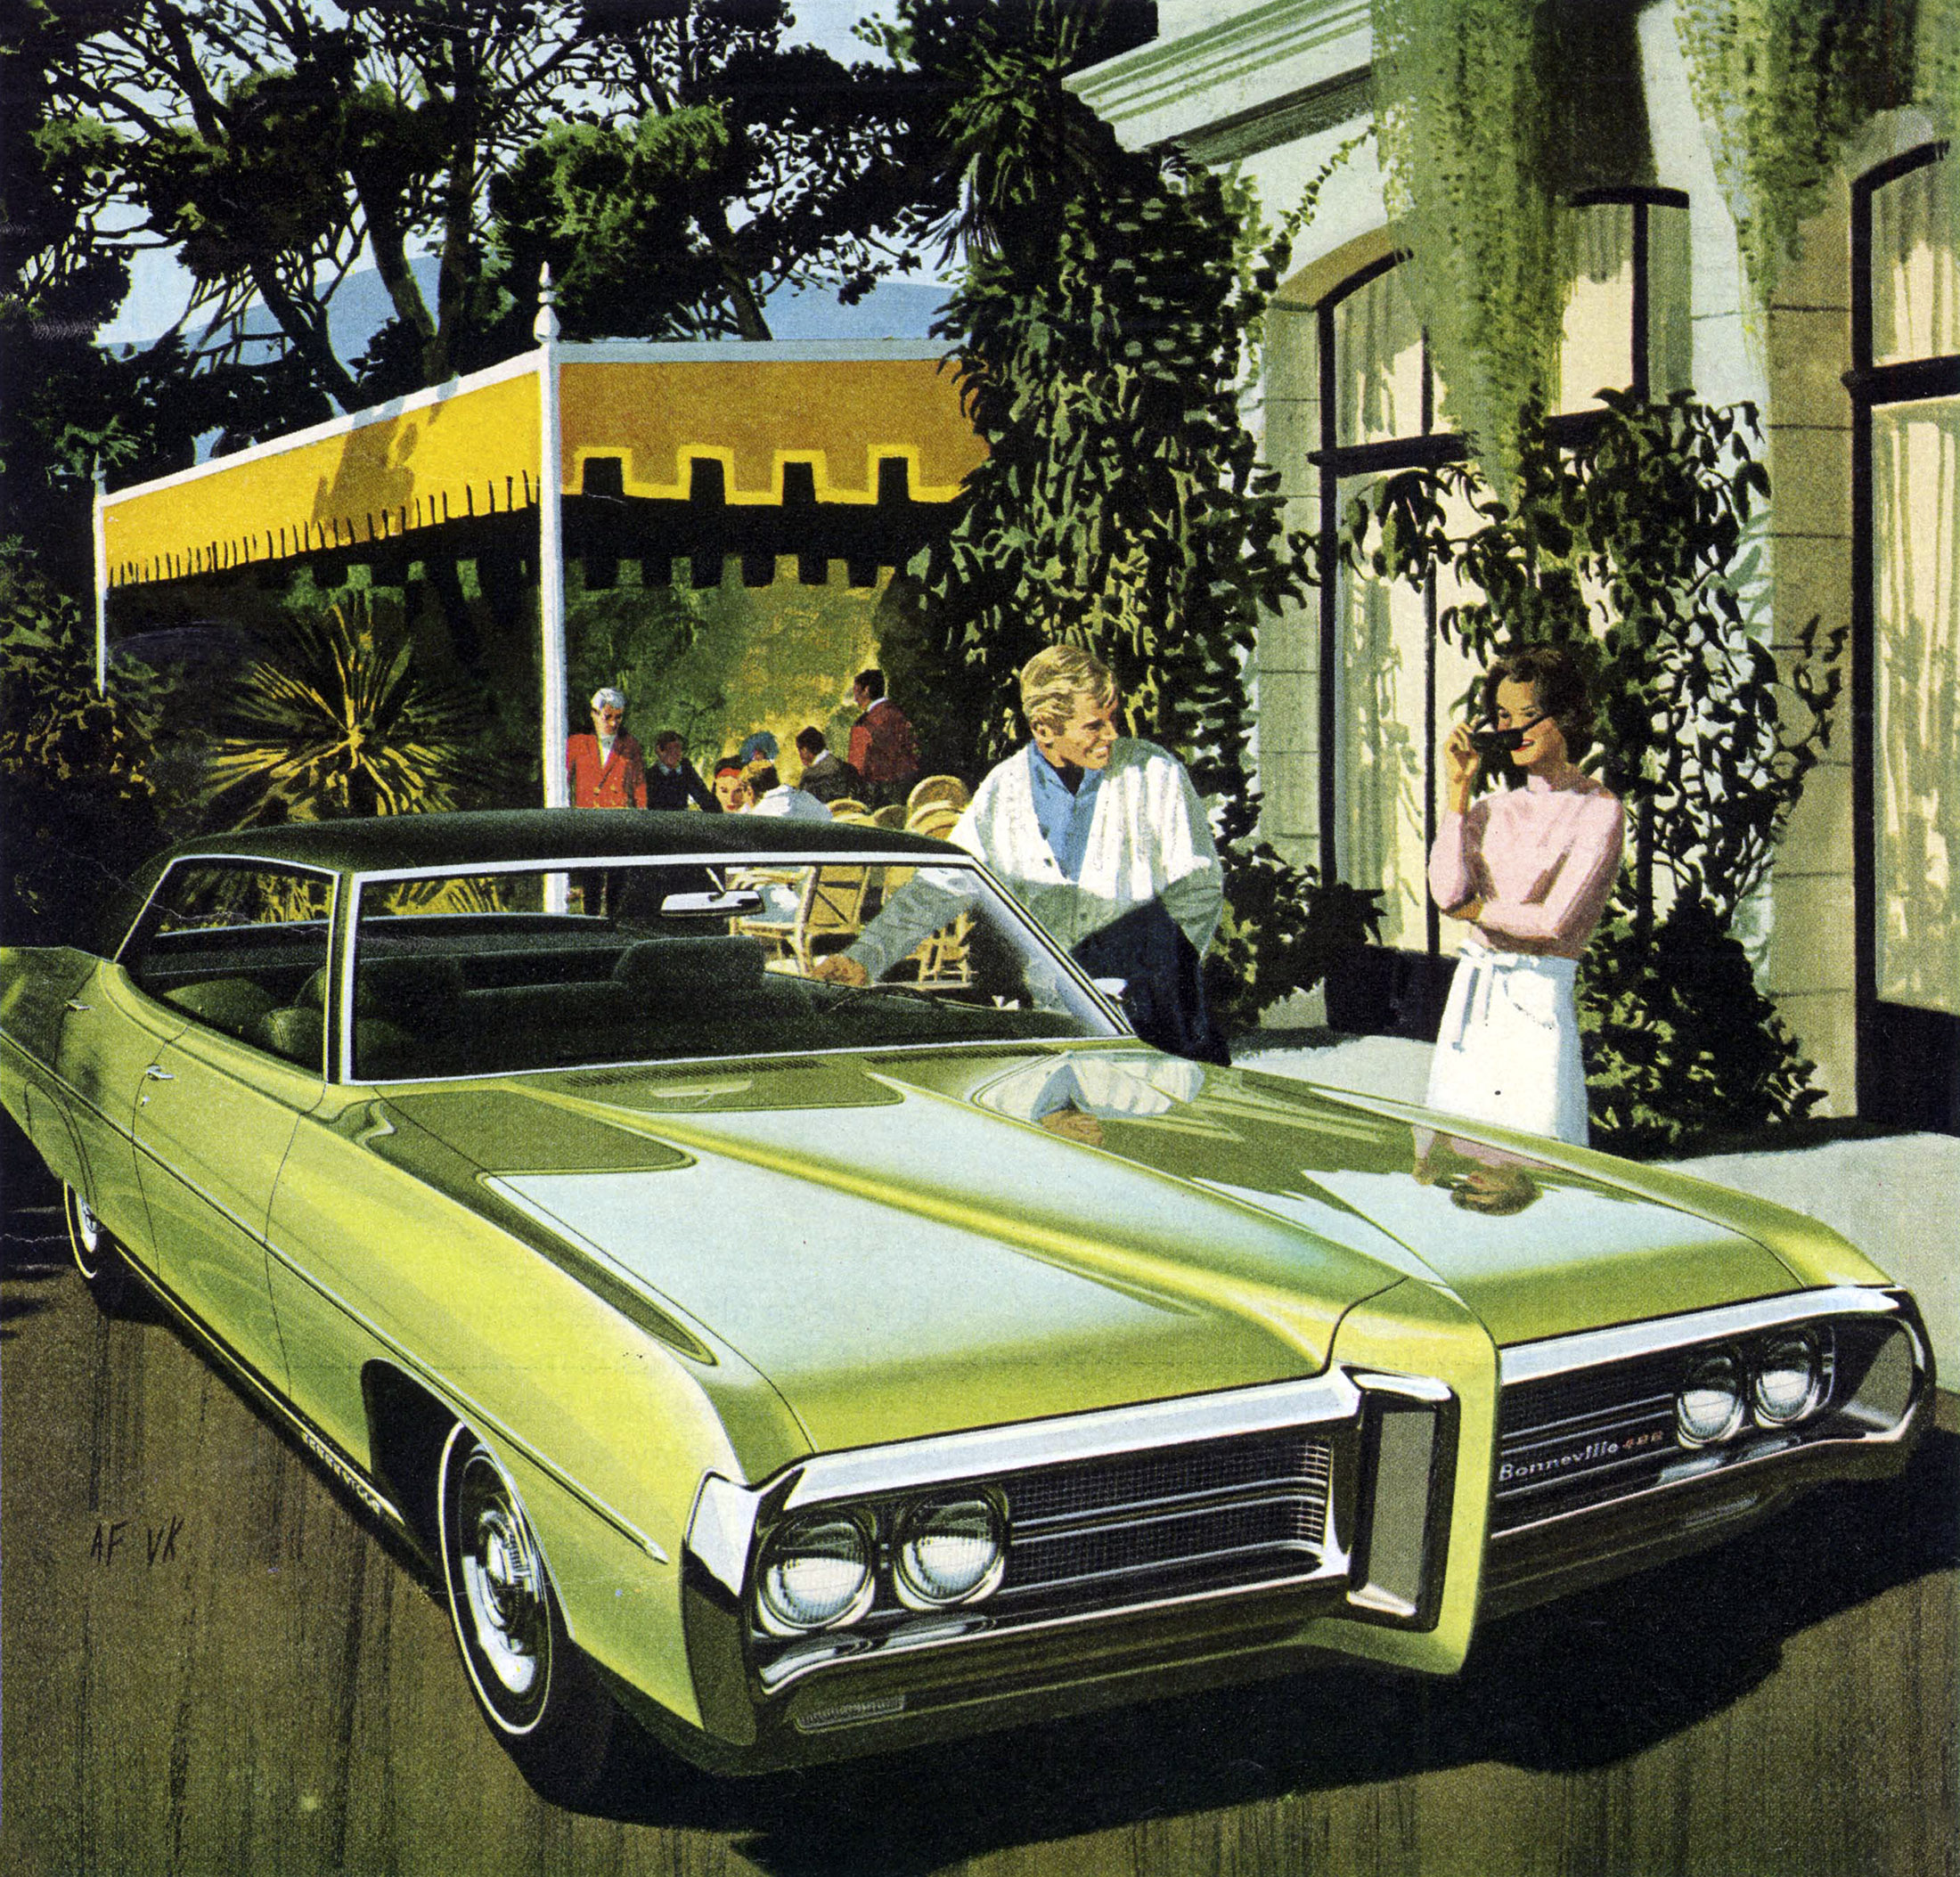 1969 Pontiac Bonneville 4-Door Hardtop: Art Fitzpatrick and Van Kaufman